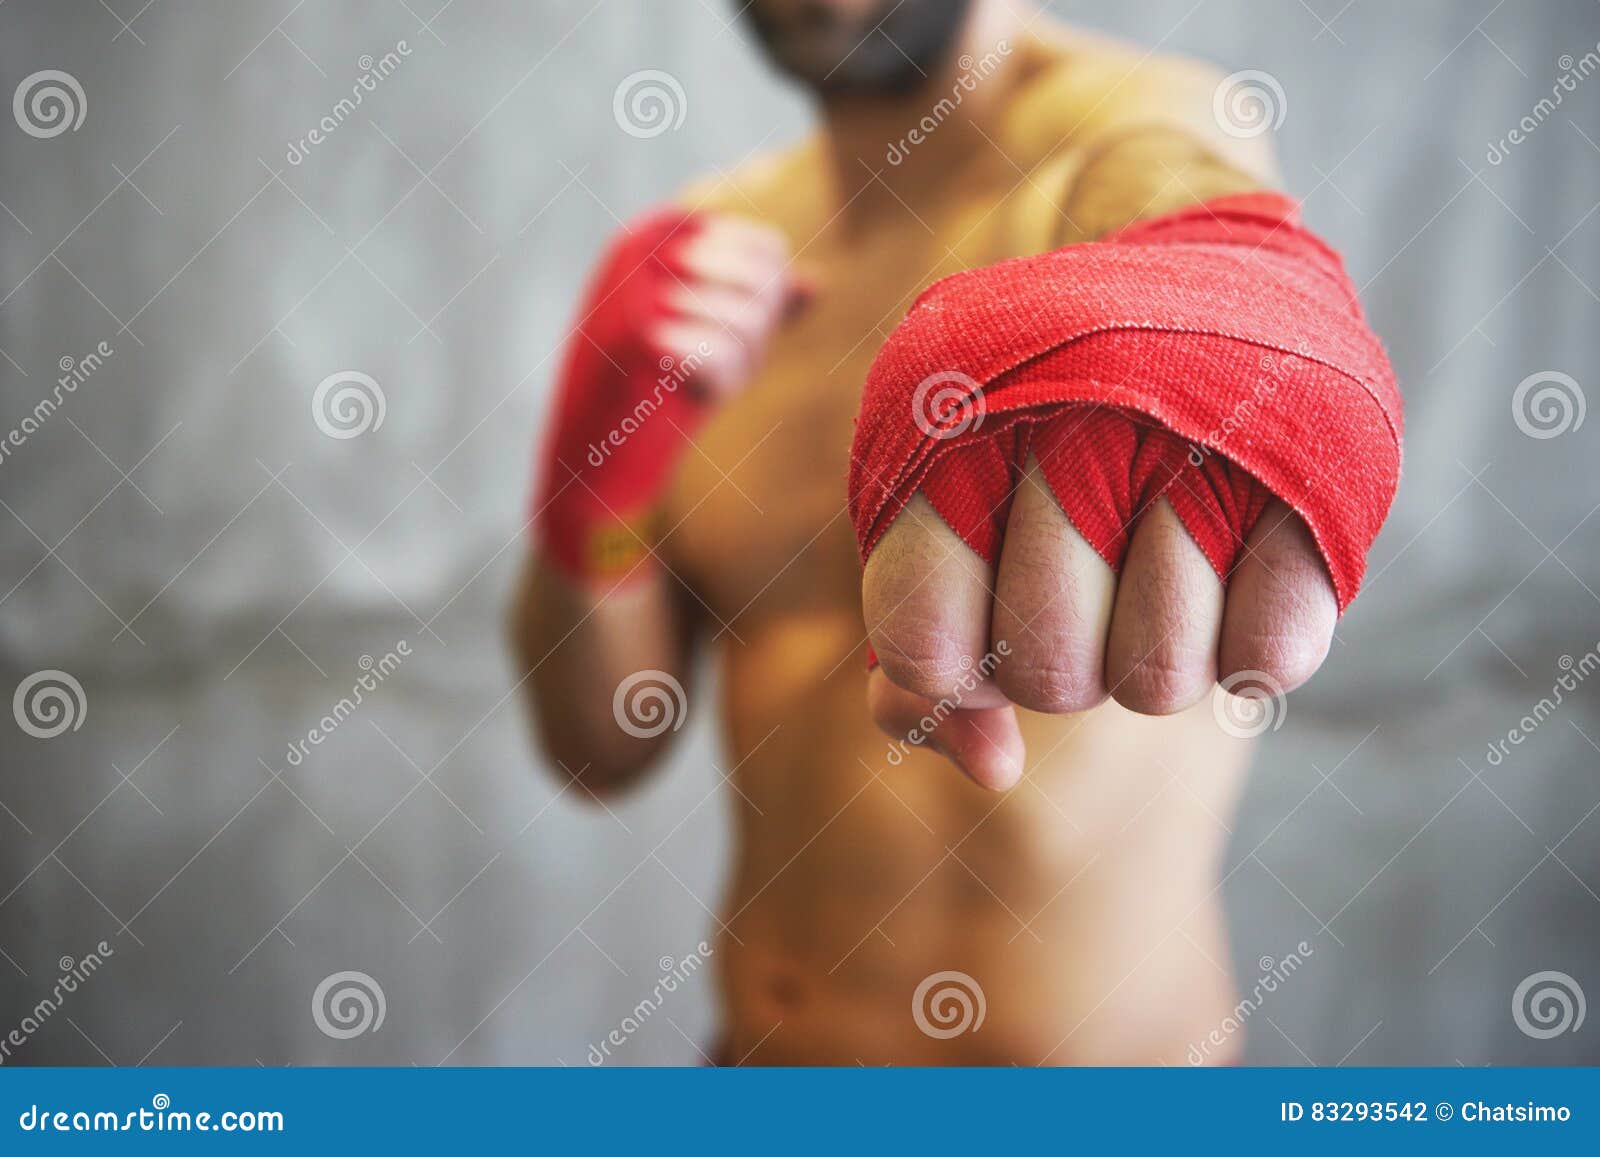 https://thumbs.dreamstime.com/z/tiro-de-manos-envueltas-con-la-cinta-roja-del-boxeo-de-la-lucha-joven-del-boxeador-83293542.jpg